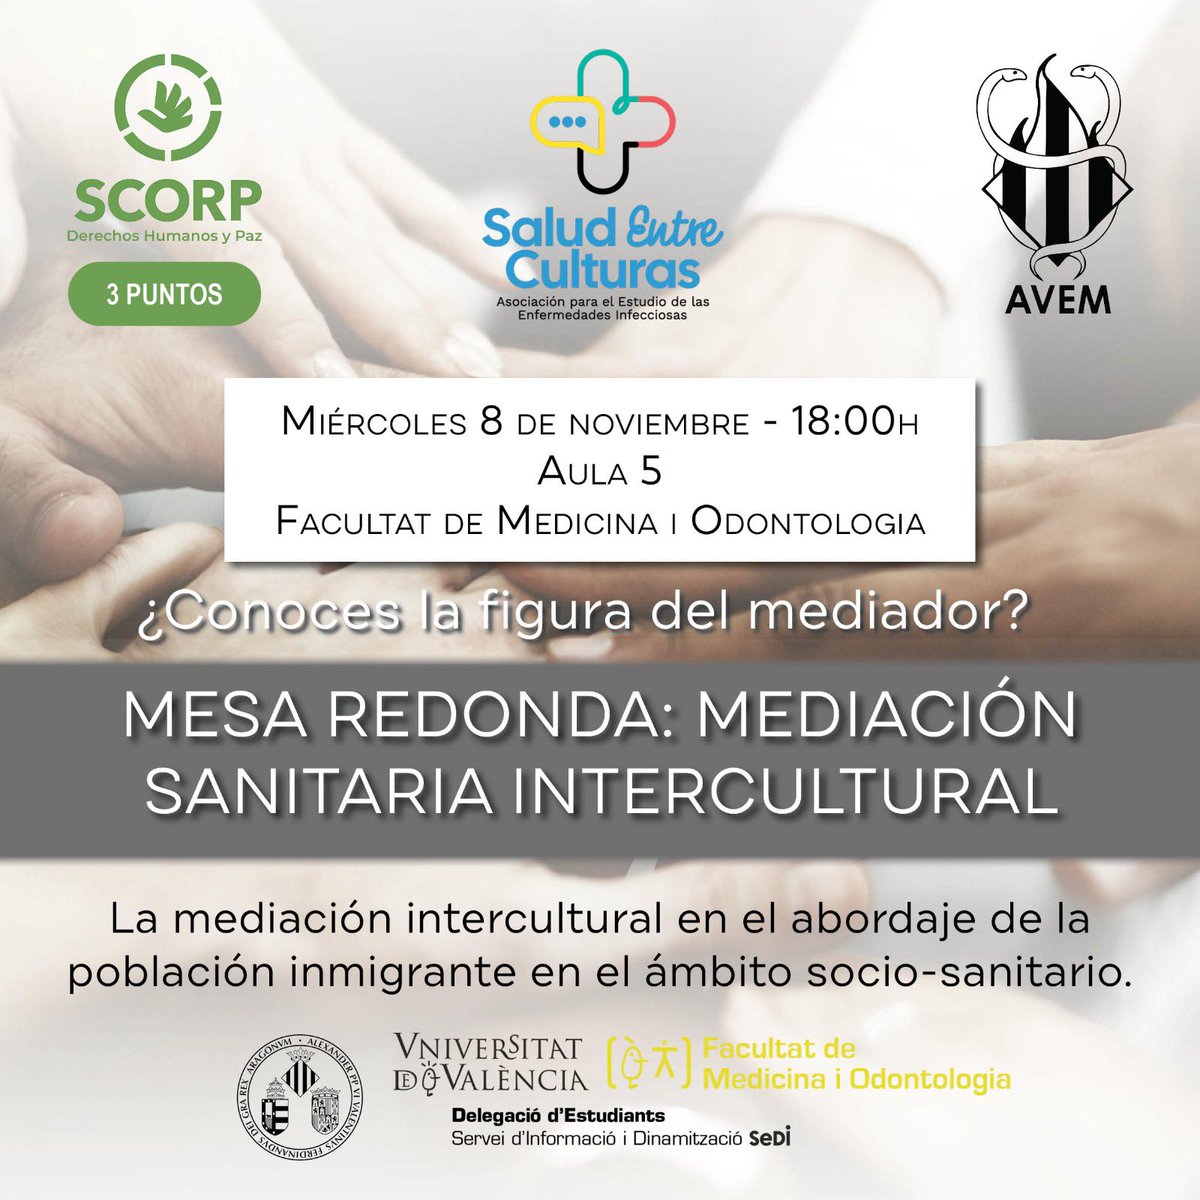 Próximo 8/11 a las 18h: Mesa redonda sobre mediación sanitaria intercultural en la Facultad de Medicina de la Universitat de Valencia @medicina_uv junto a @avem_ifmsa y @SediUV.